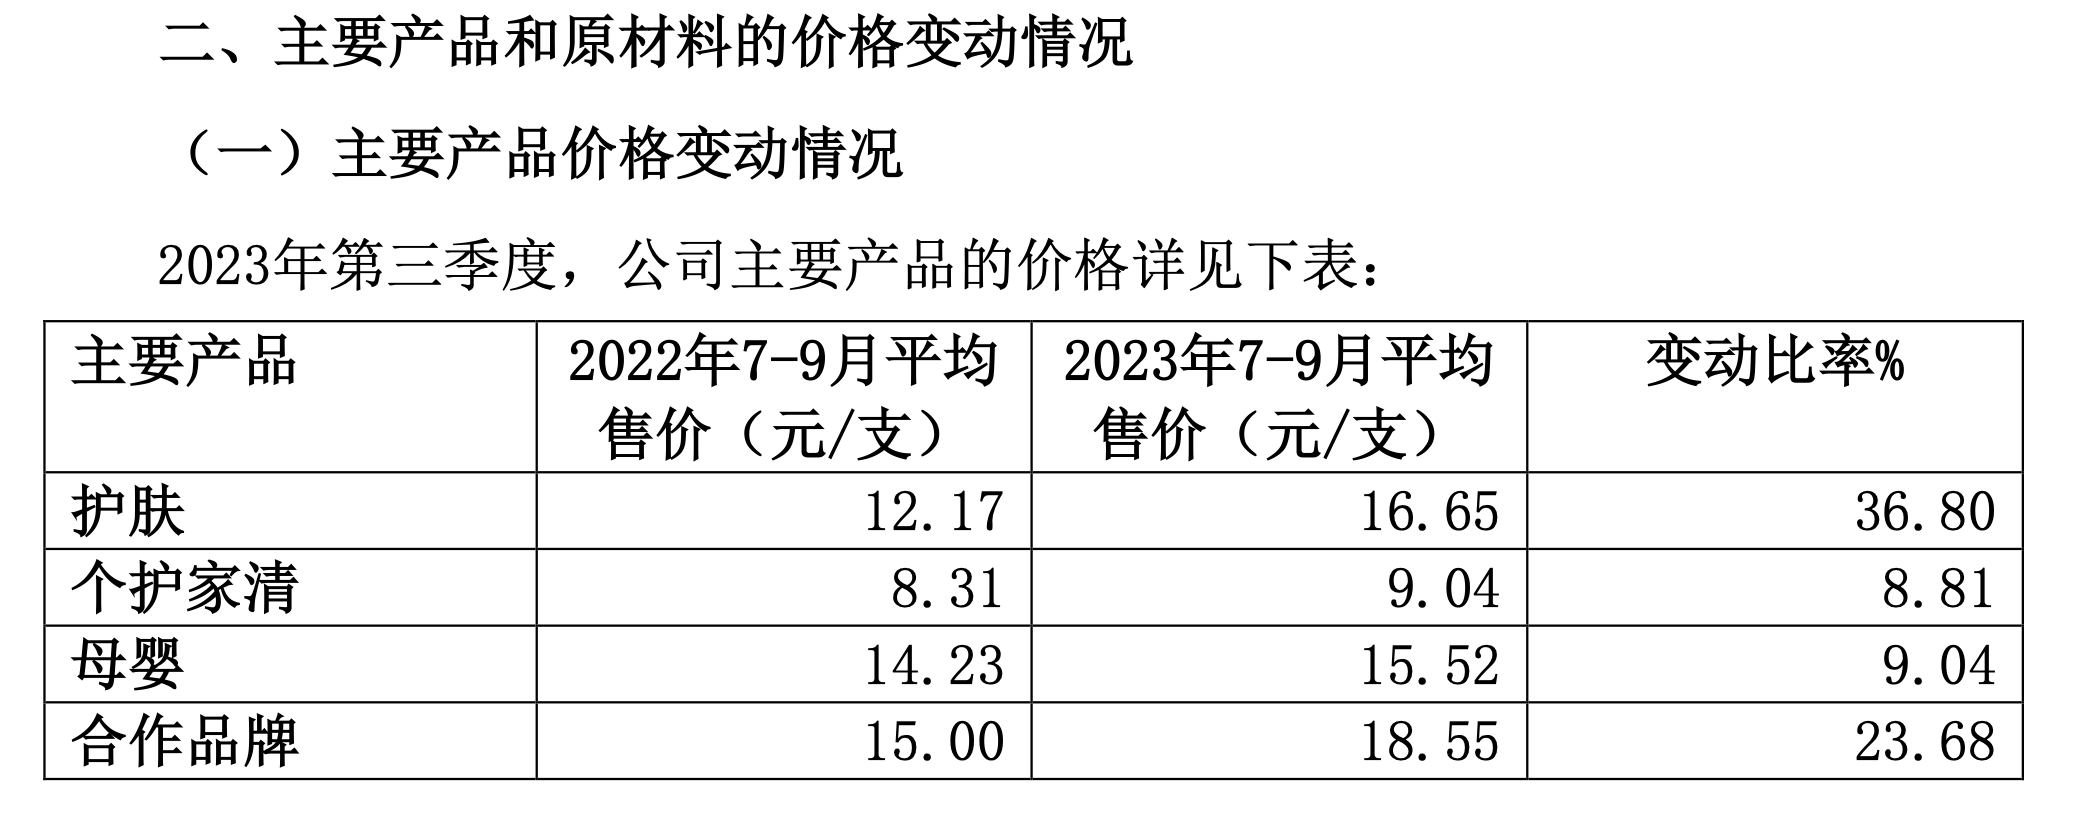 上海家化主要产品的价格情况